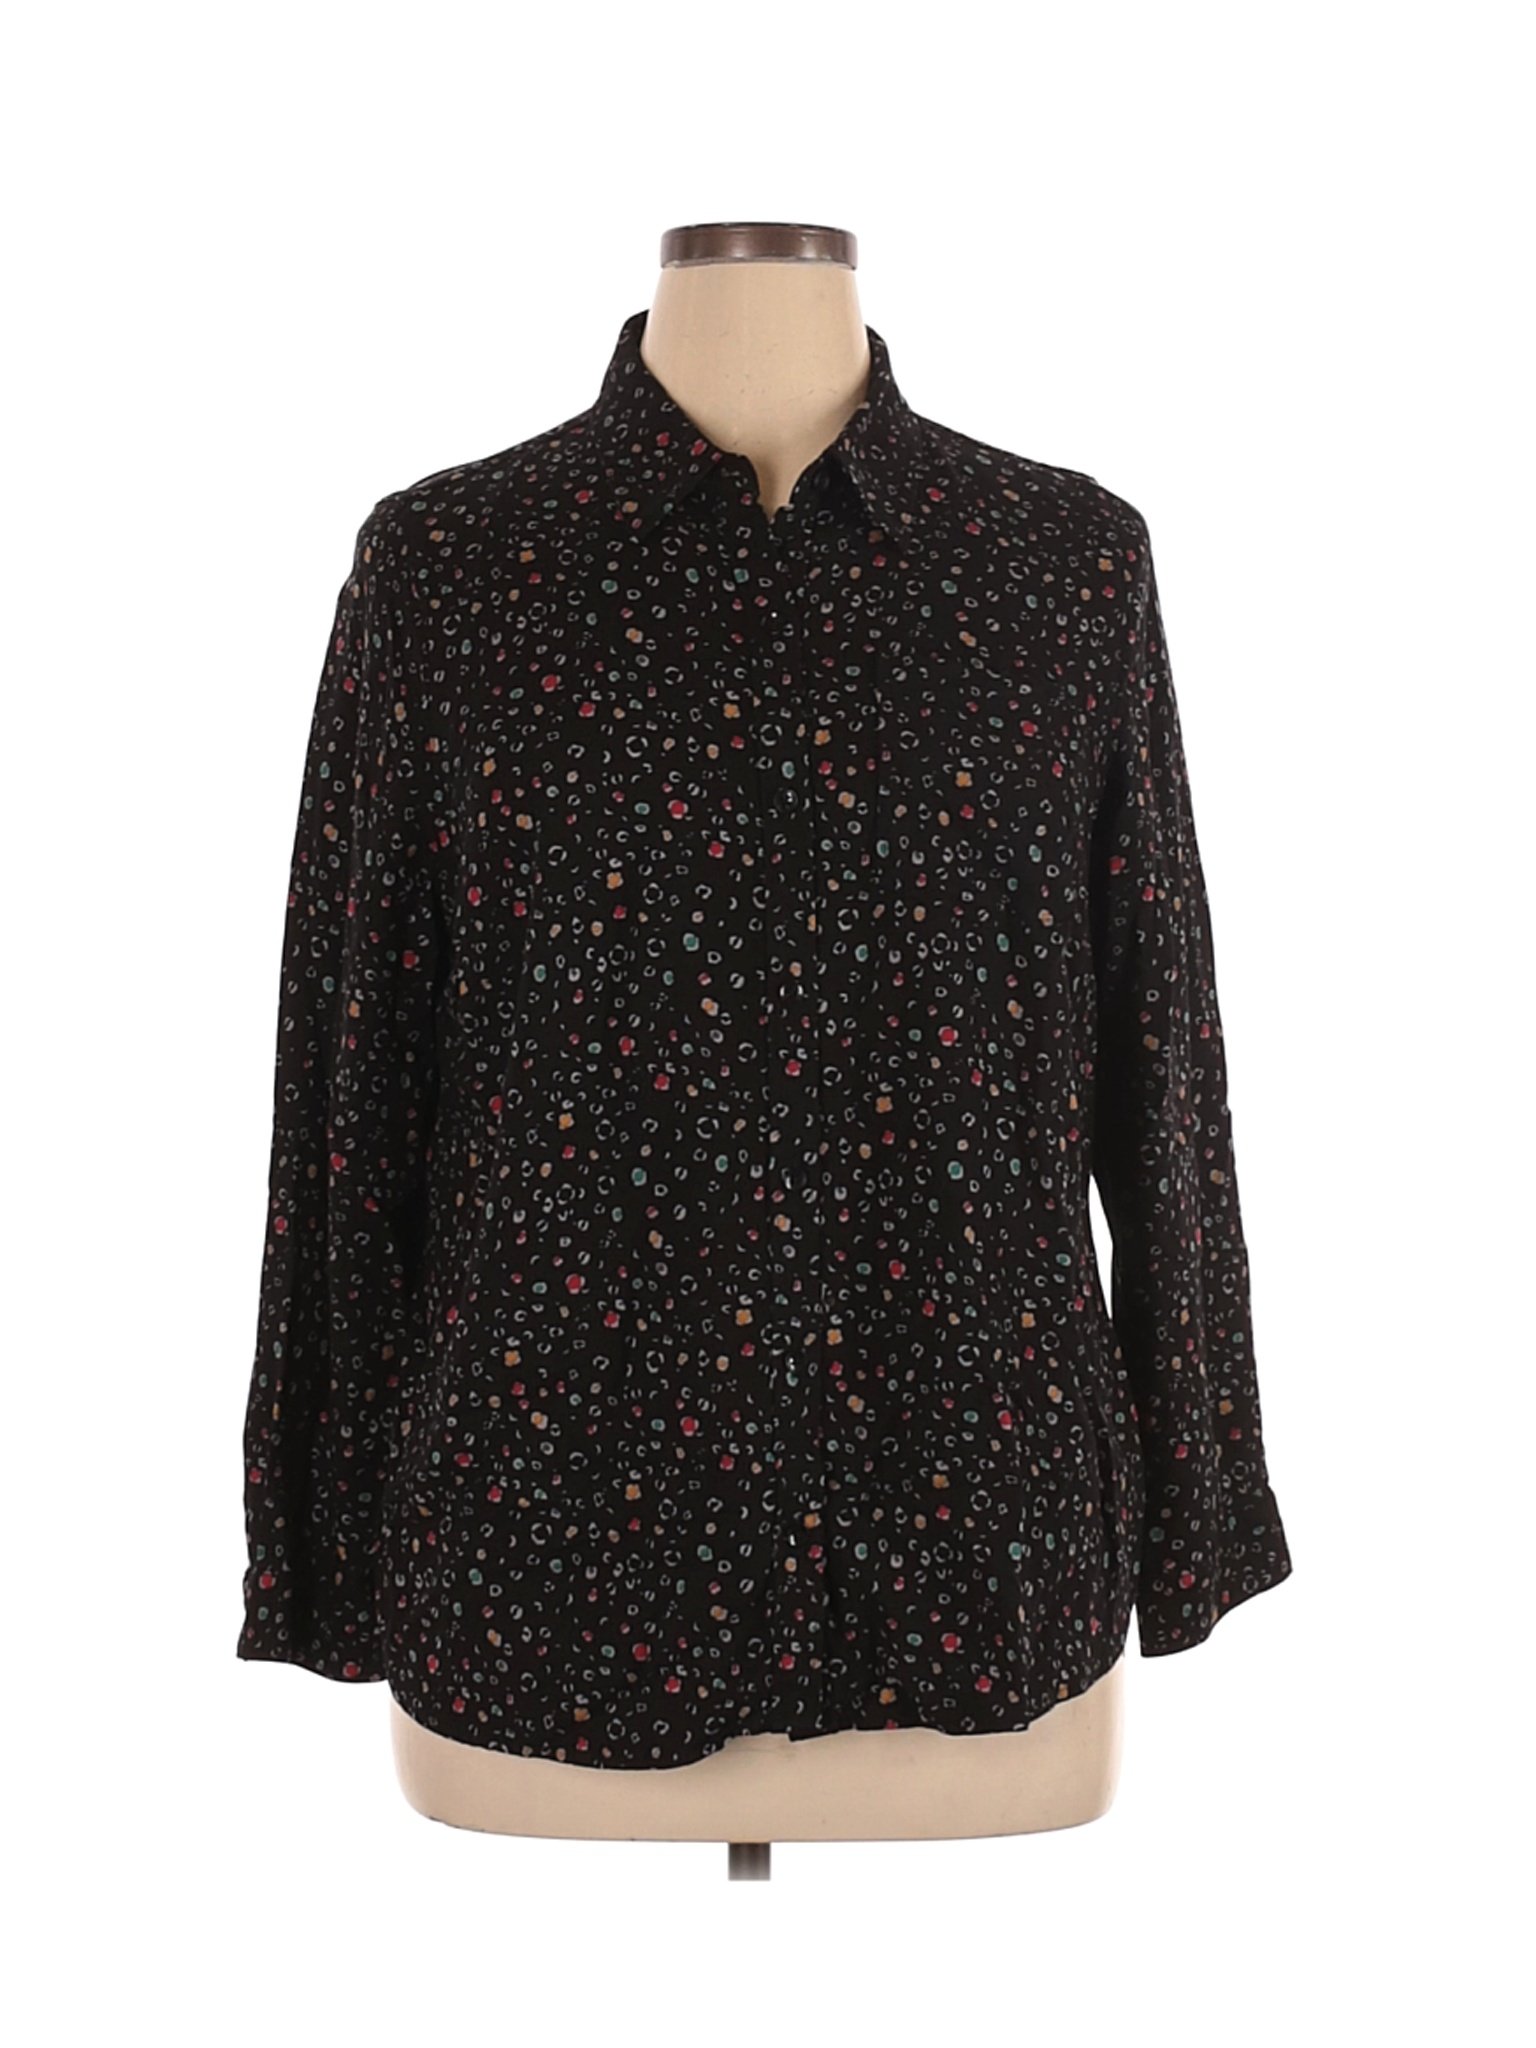 Cj Banks Women Black Long Sleeve Button-Down Shirt 1X Plus | eBay